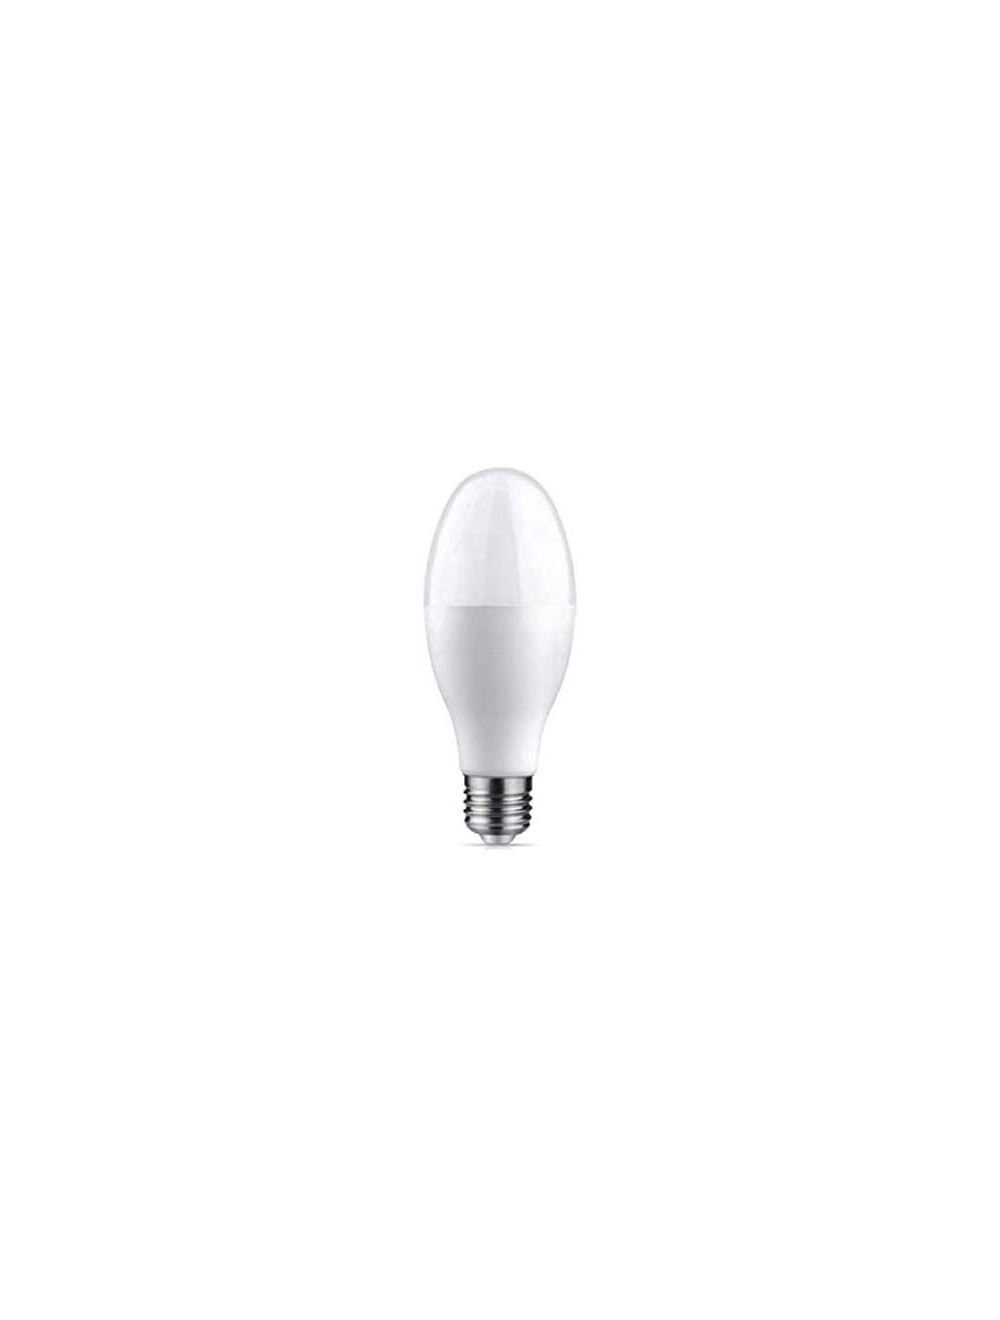 Olsenmark LED Energy Saving Light, 20W - Better Heat Transfer, Aluminum Inside